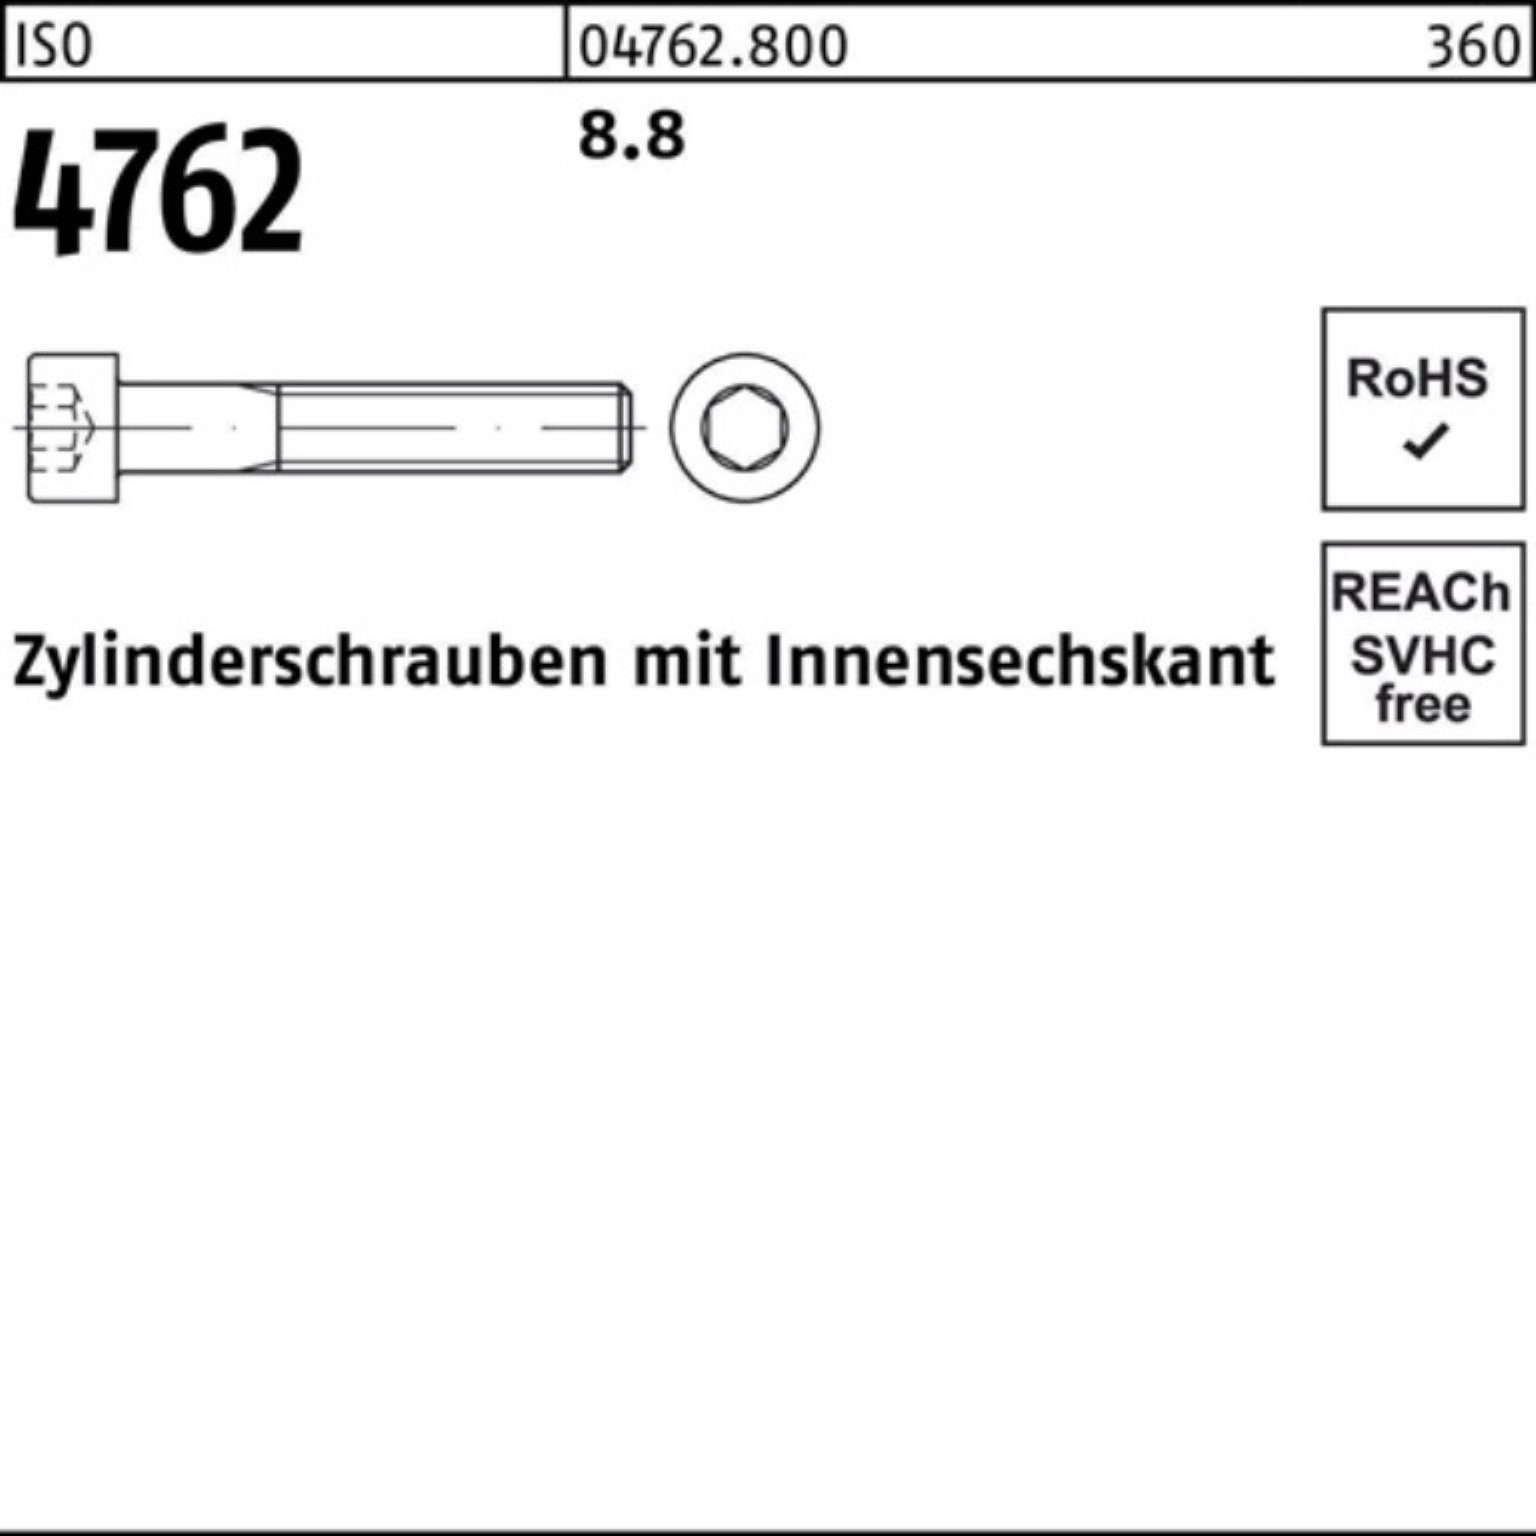 100er 8.8 Stück Reyher Innen-6kt 190 Zylinderschraube 4762 1 M27x Pack I ISO Zylinderschraube